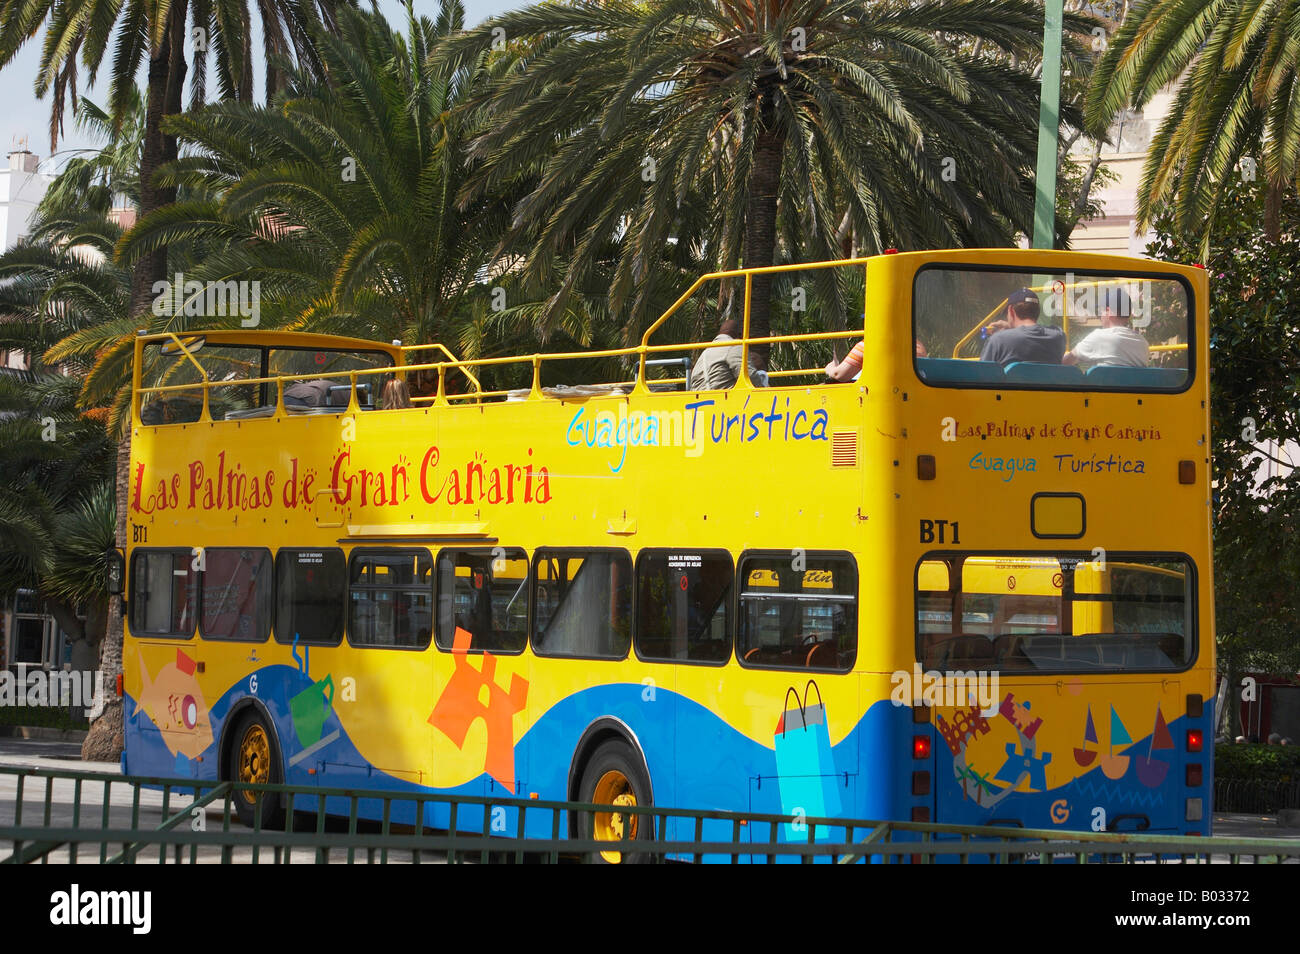 Bus Turístico, Las Palmas de Gran Canaria Fotografía de stock - Alamy